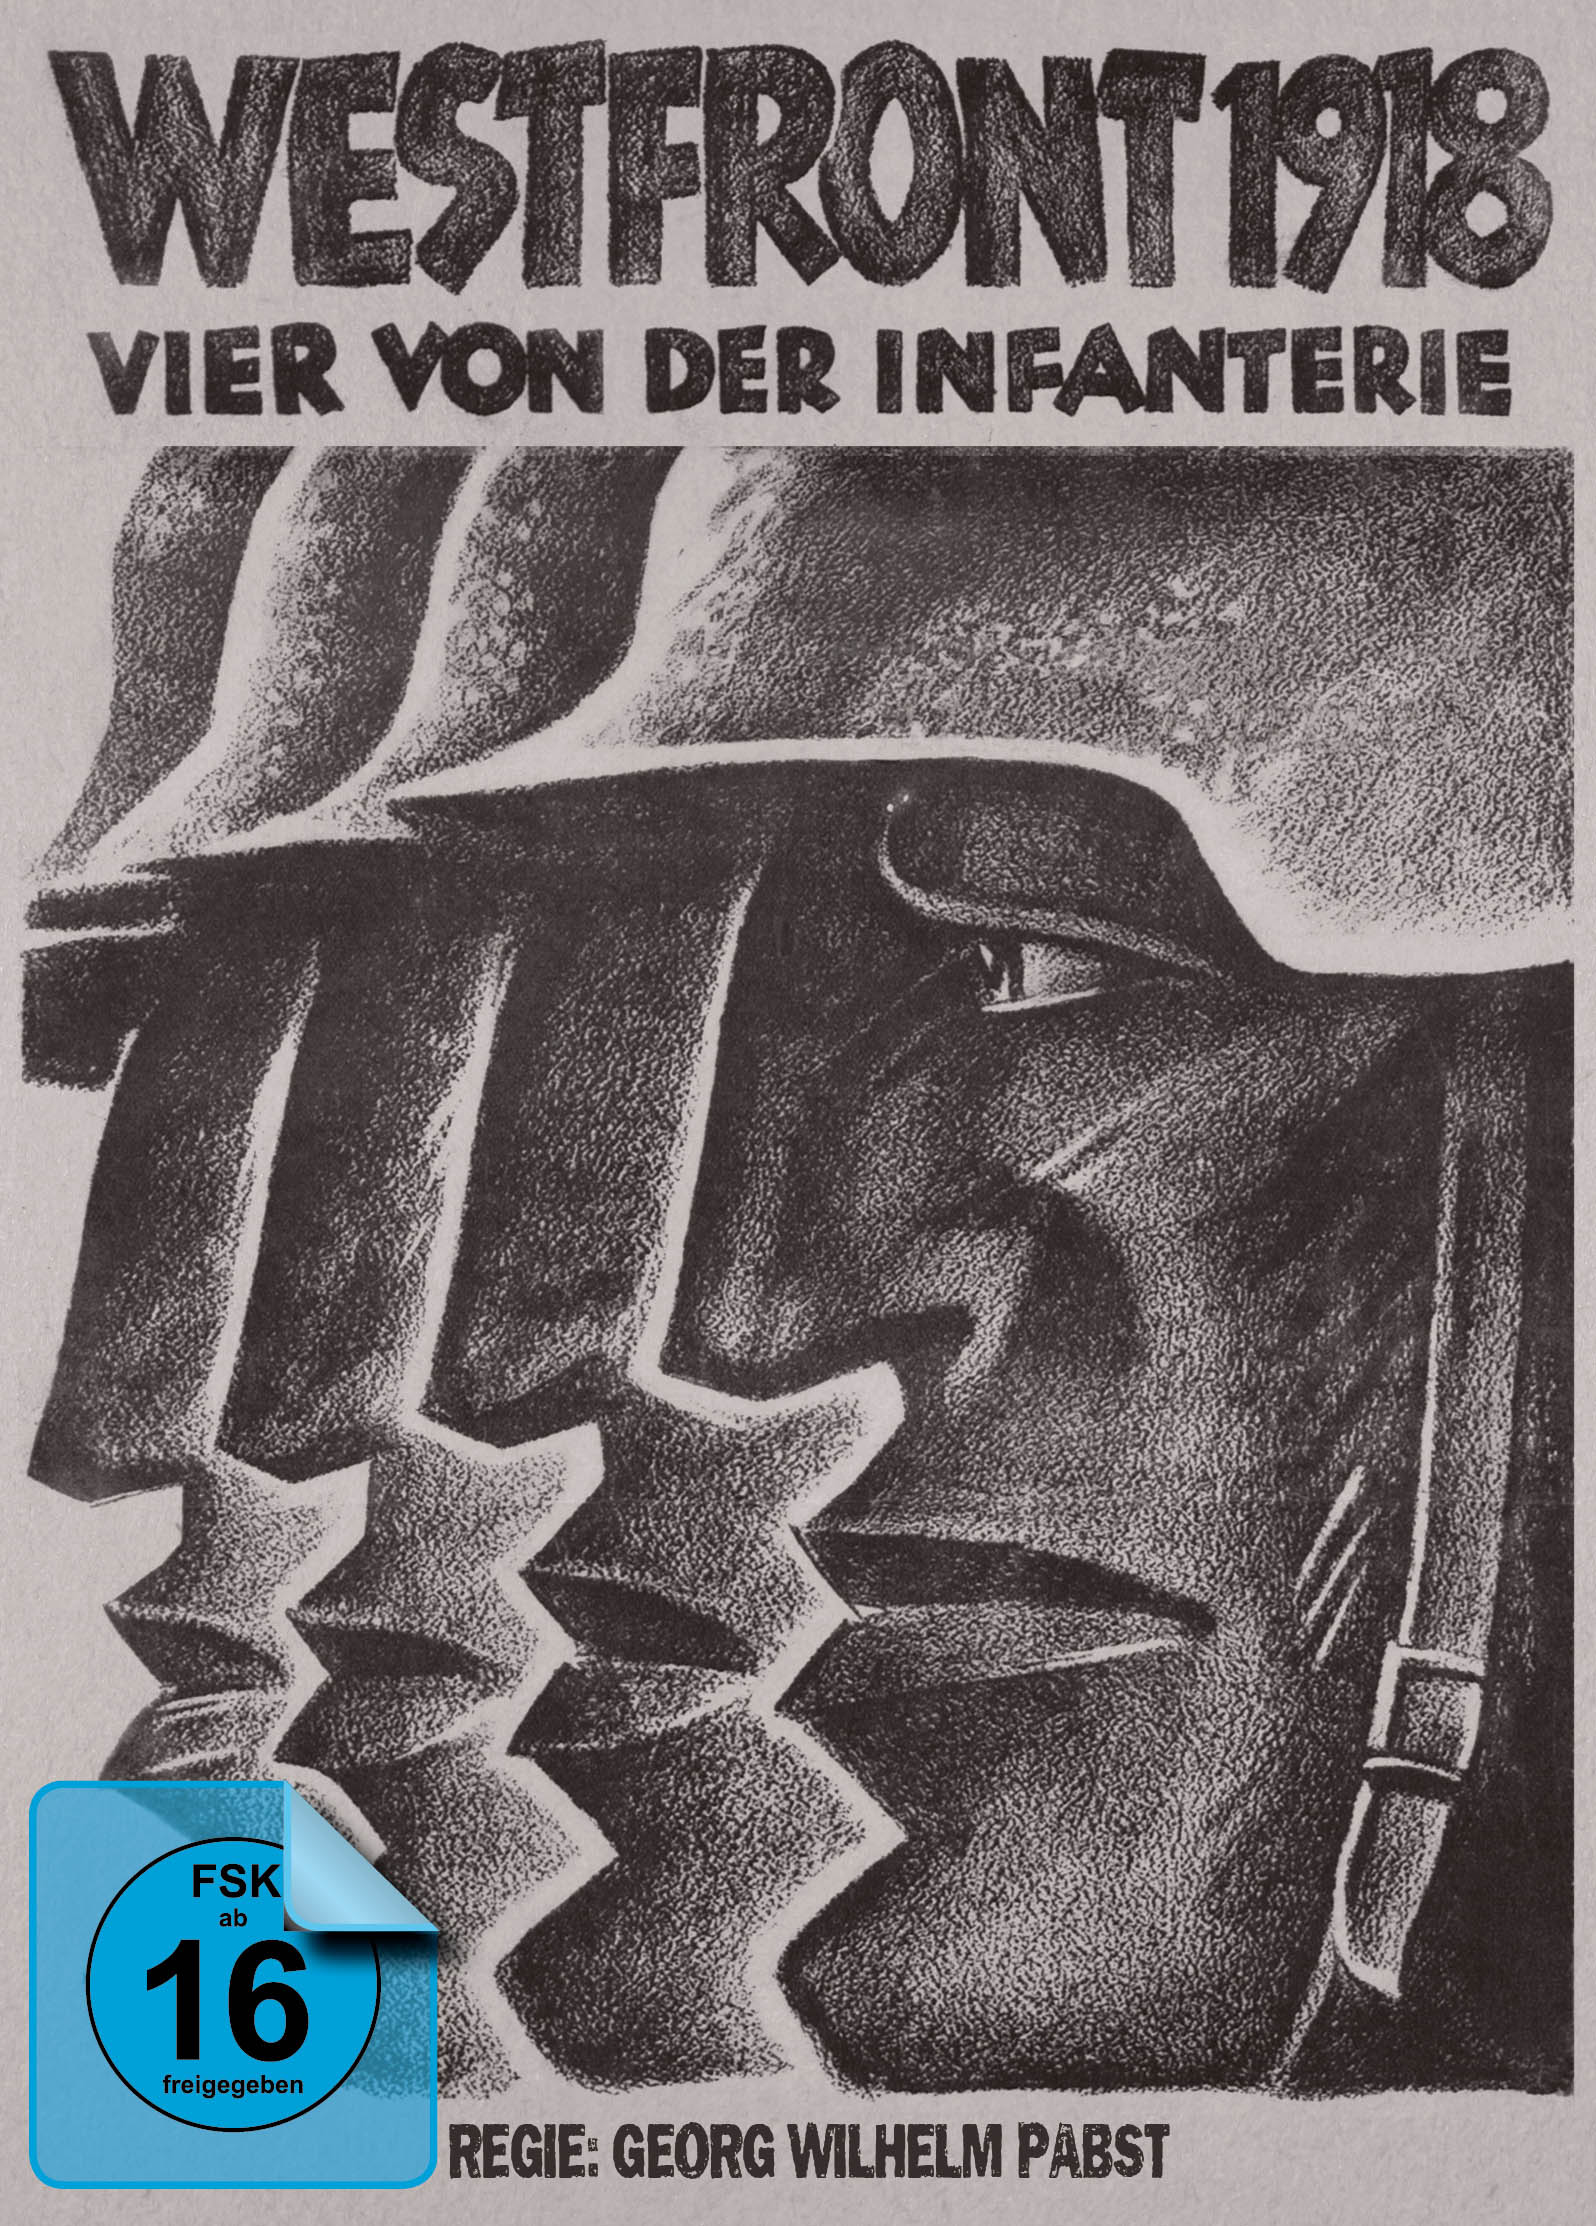 Westfront 1918: Blu-ray der von Infanterie Vier